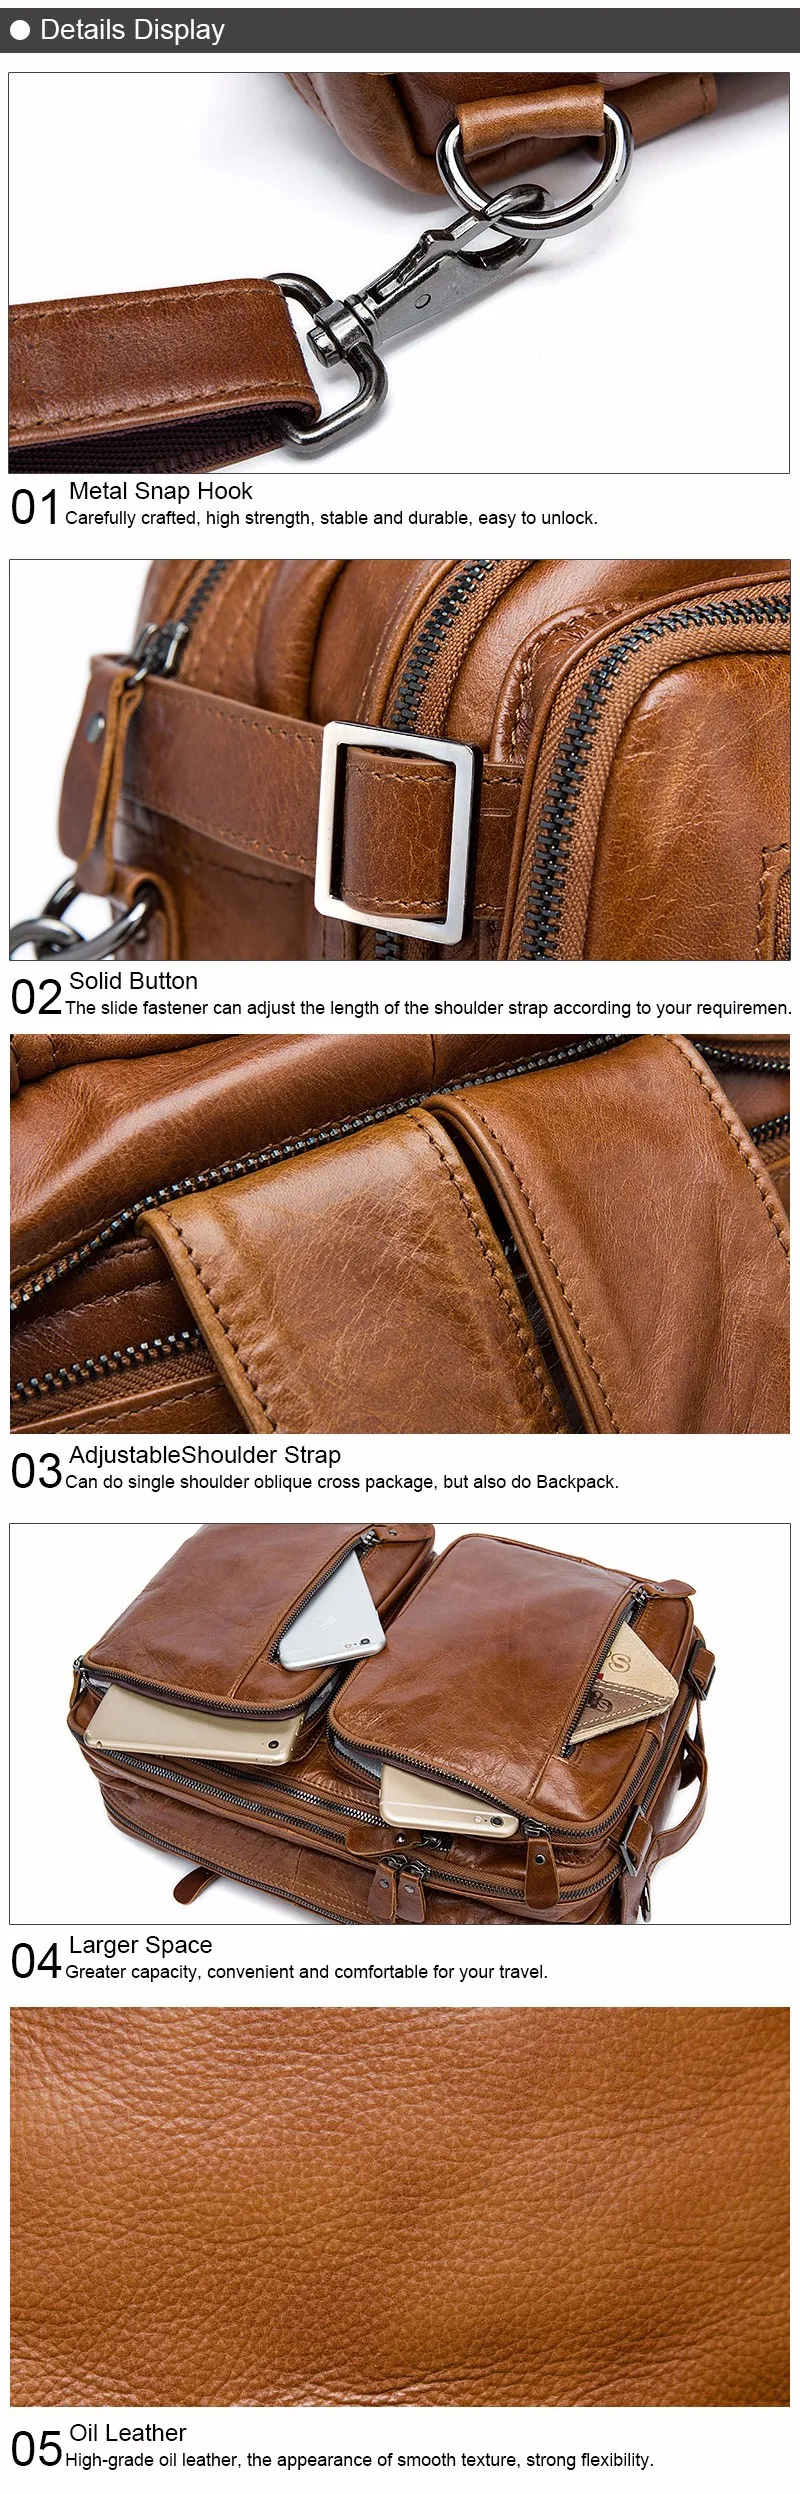 WESTAL мужская сумка натуральная кожа сумка мужская портфель мужской портфель из натуральной кожи портфель кожаный мужской сумку для